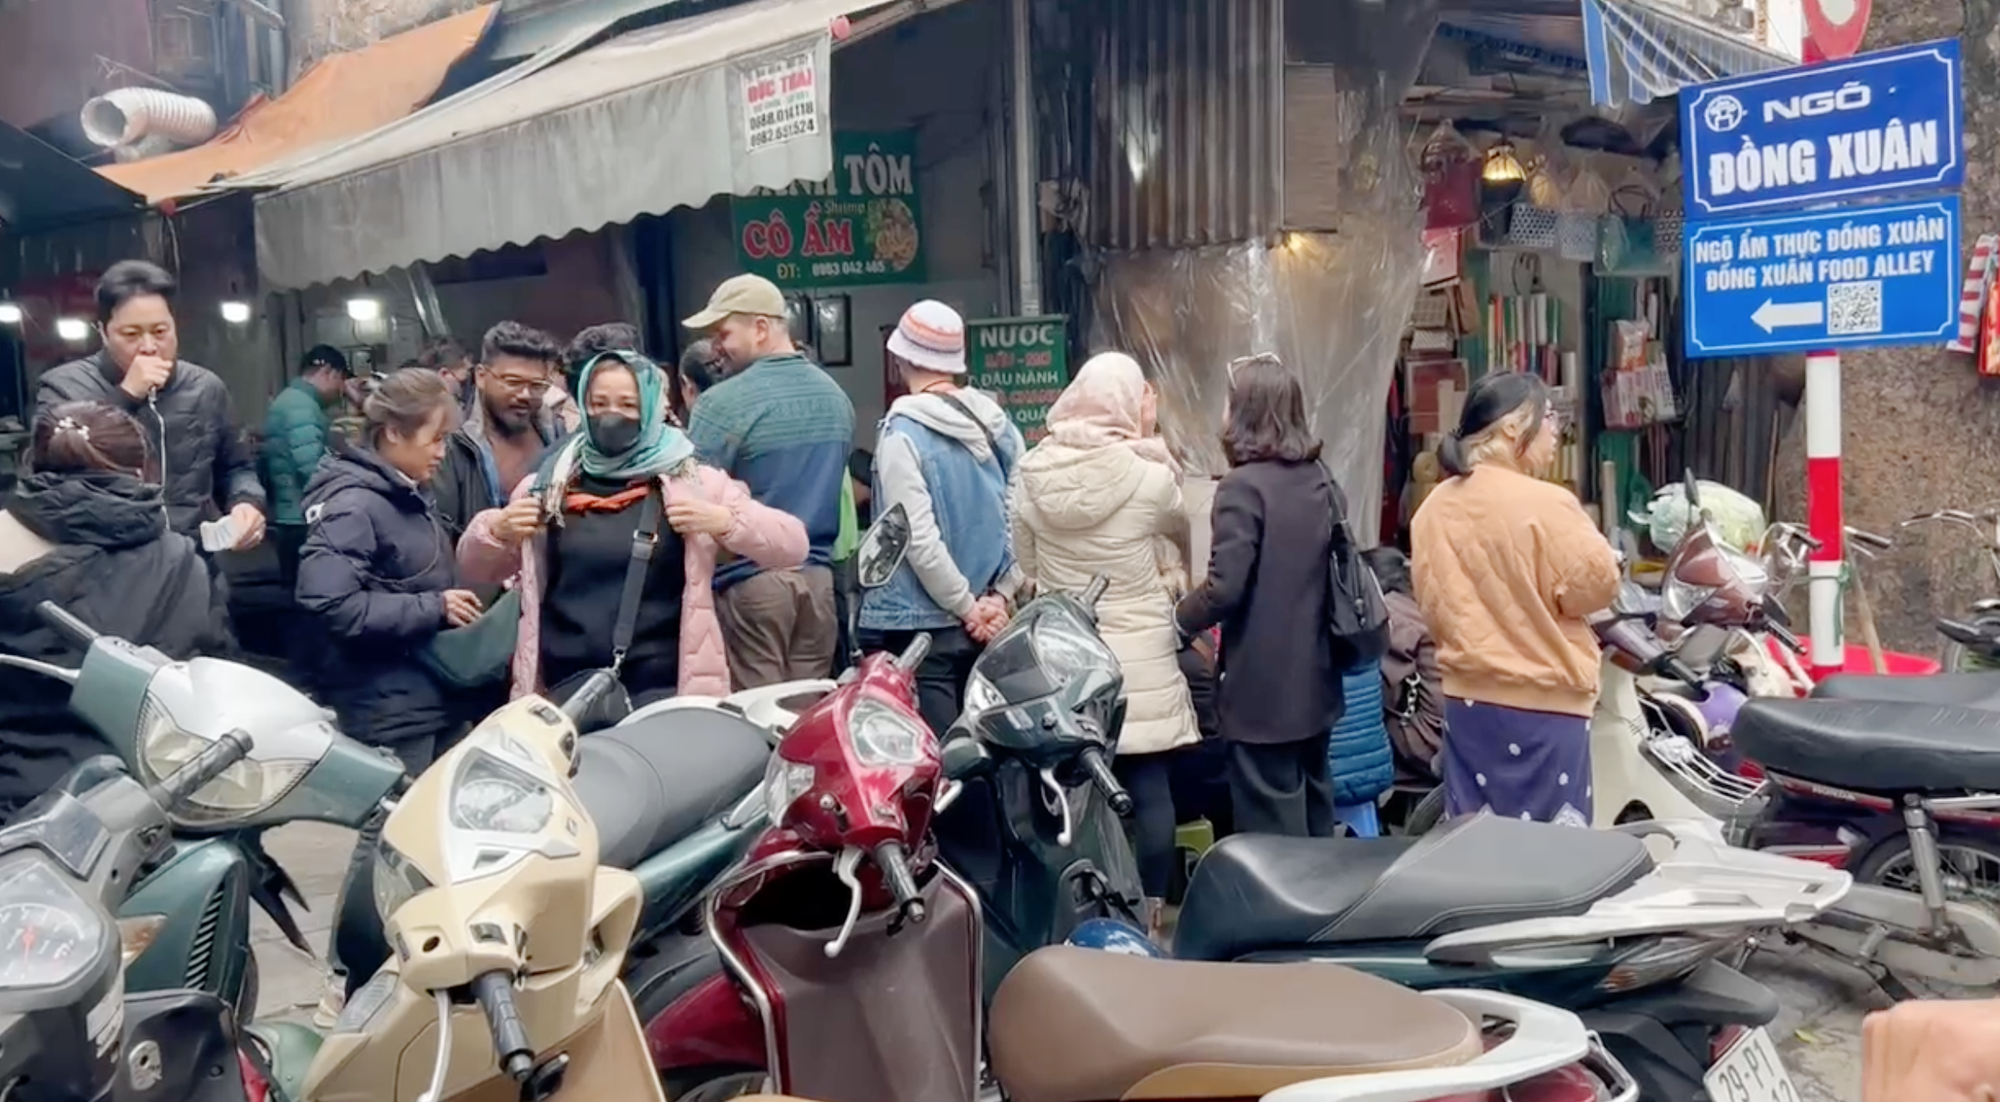 Cảnh tượng khách nước ngoài xếp hàng chờ ăn bánh tôm ở một khu chợ tại Hà Nội khiến nhiều người bất ngờ- Ảnh 2.